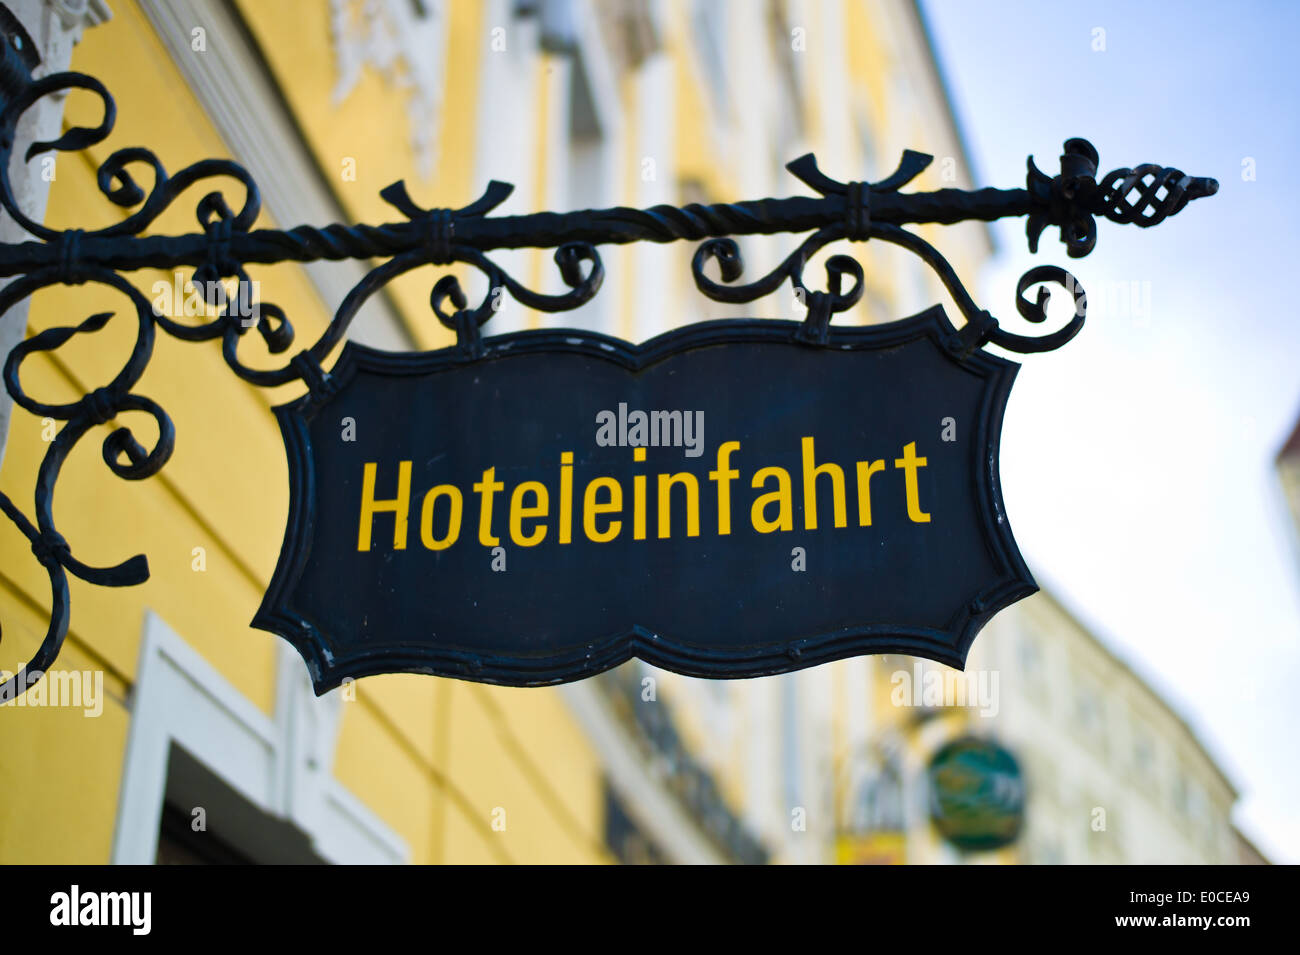 A sign with the entrance of a hotel. Hotel entrance, Ein Schild bei der Einfahrt eines Hotels. Hoteleinfahrt Stock Photo